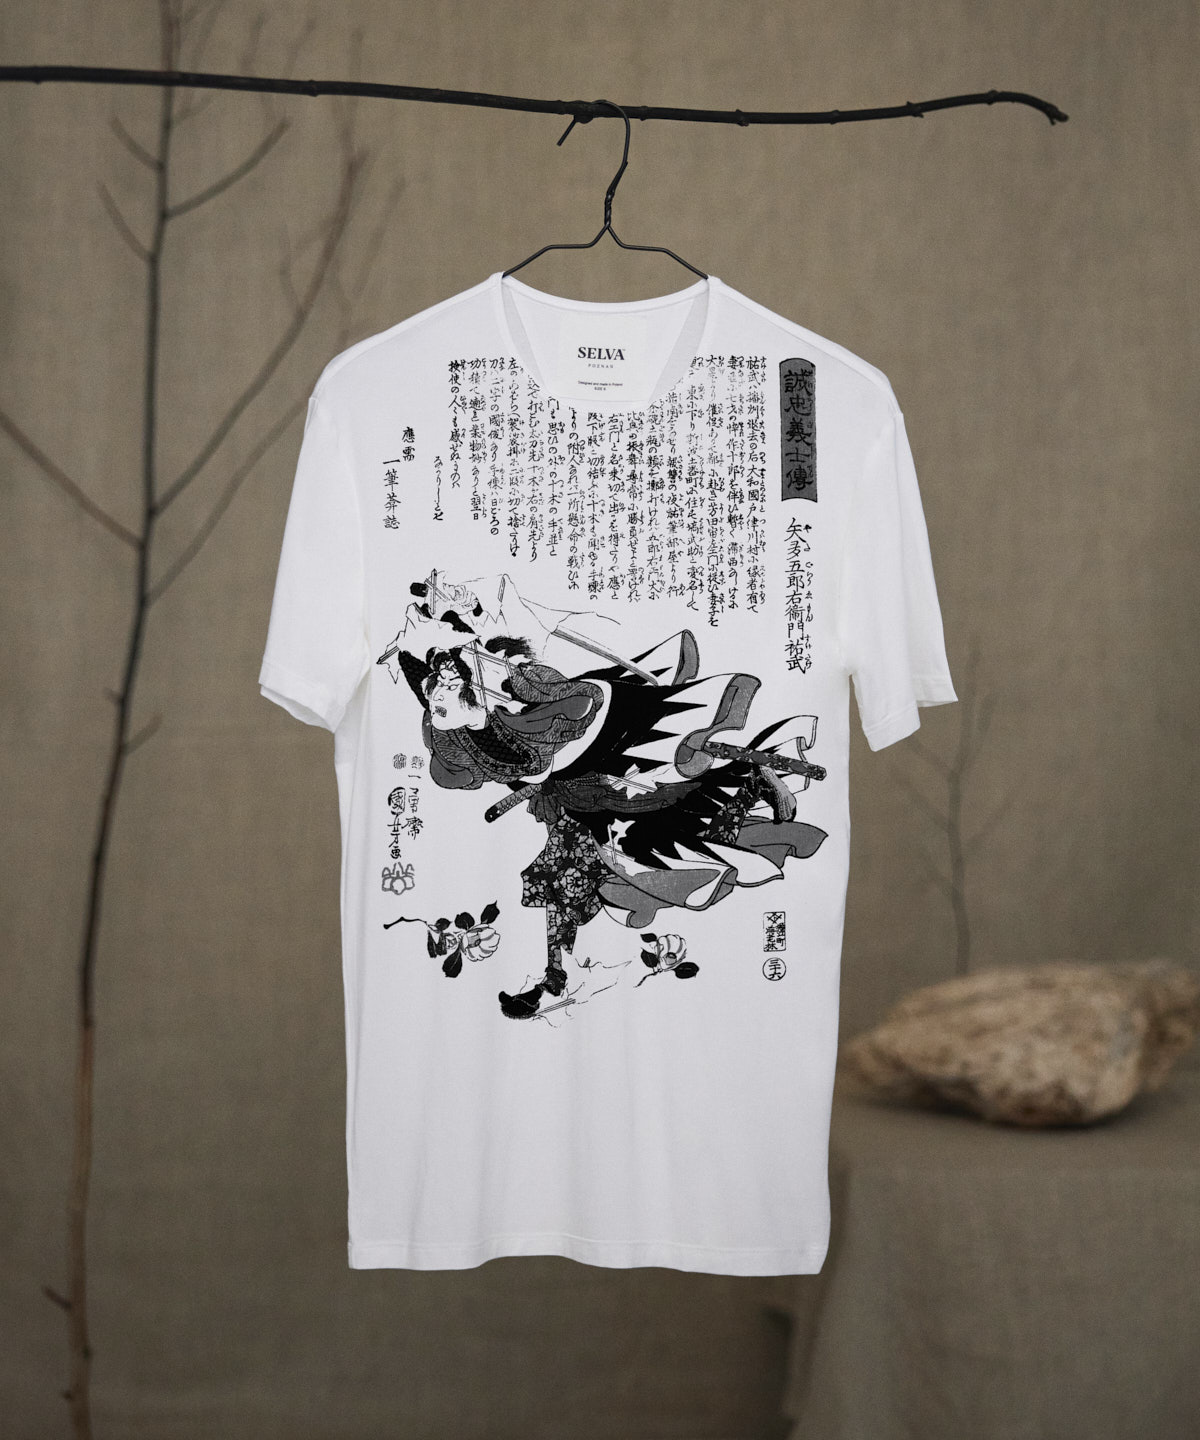 Utagawa Kuniyoshi no.92 white t-shirt men